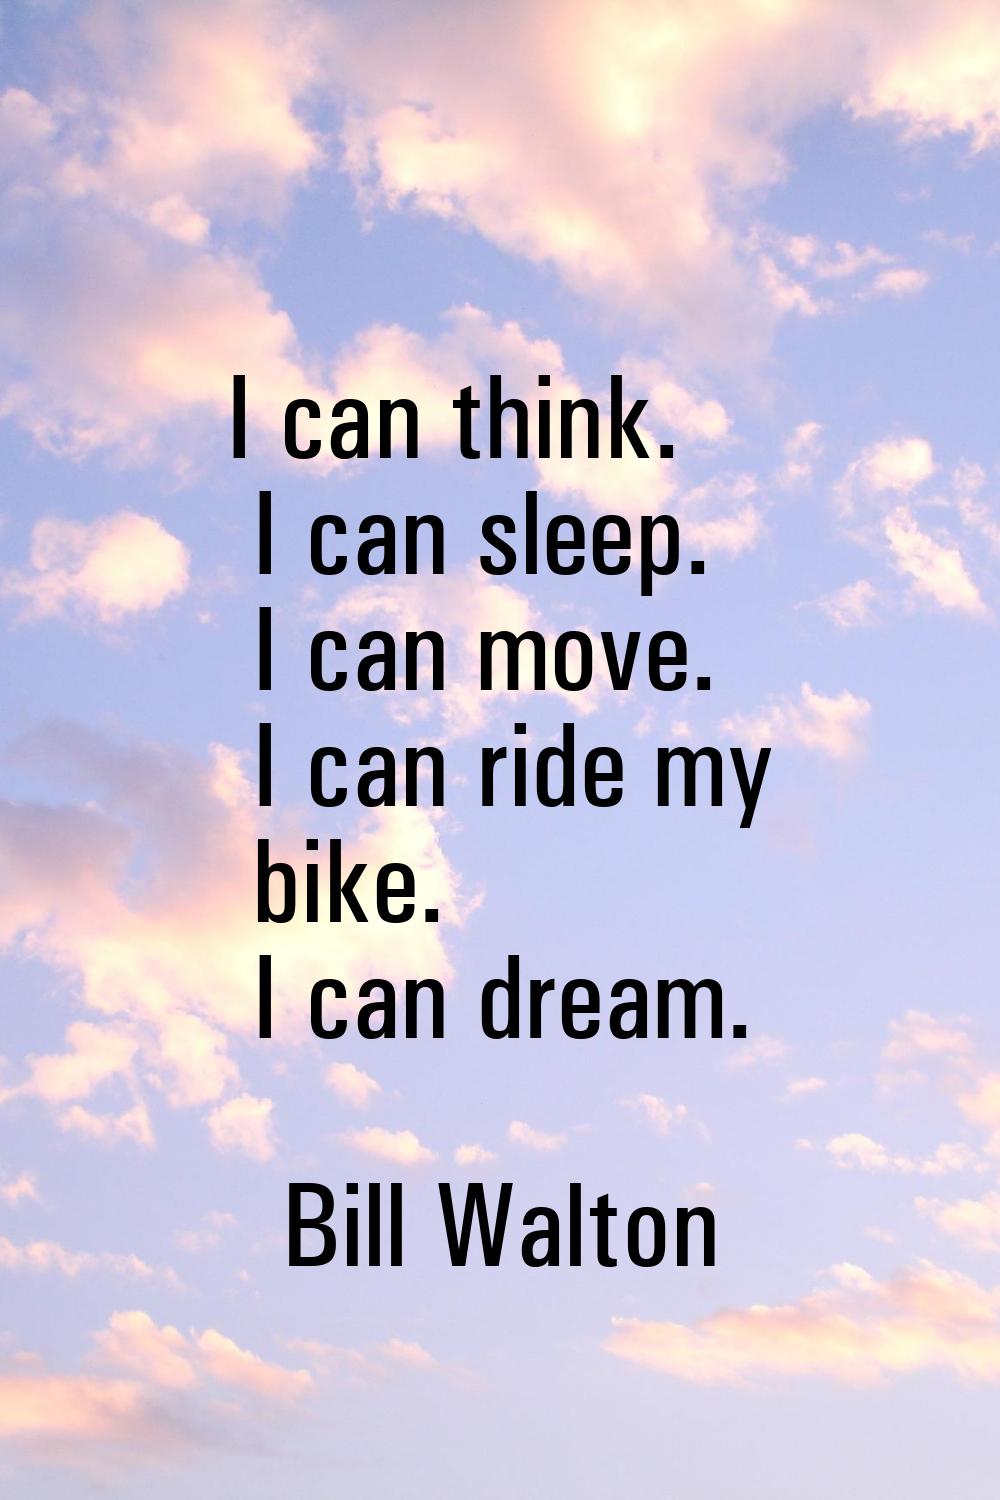 I can think. I can sleep. I can move. I can ride my bike. I can dream.